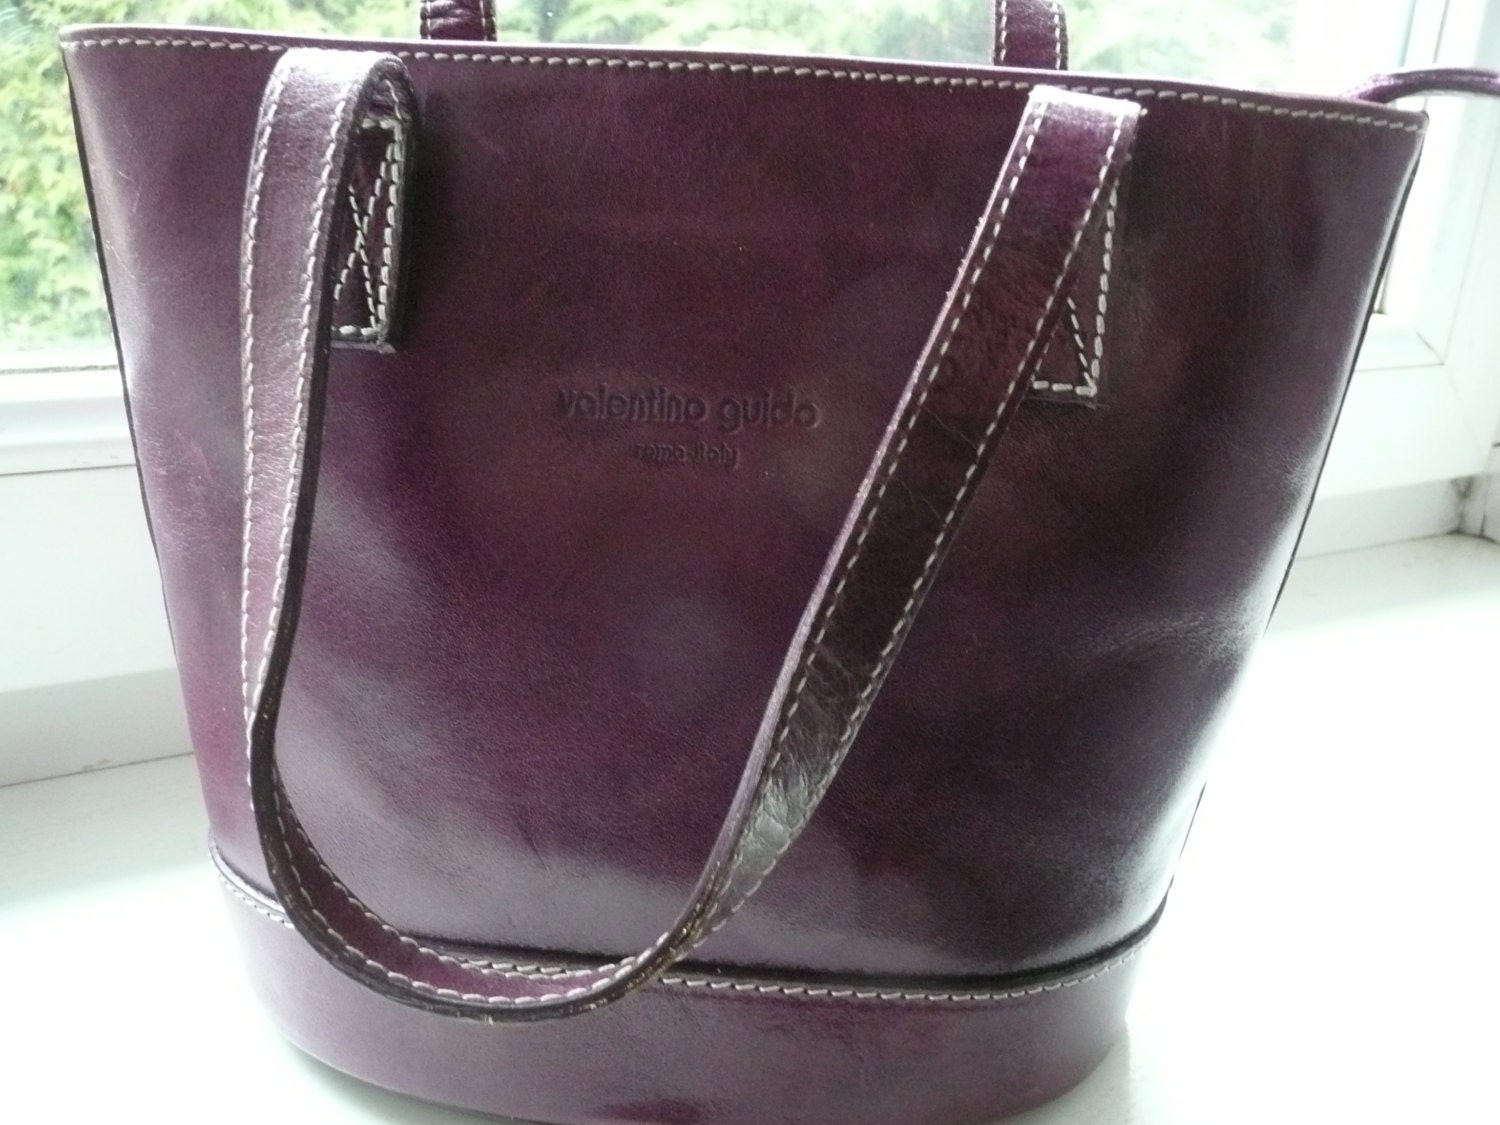 Valentino Guido Italy Leather Handbag Etsy Canada